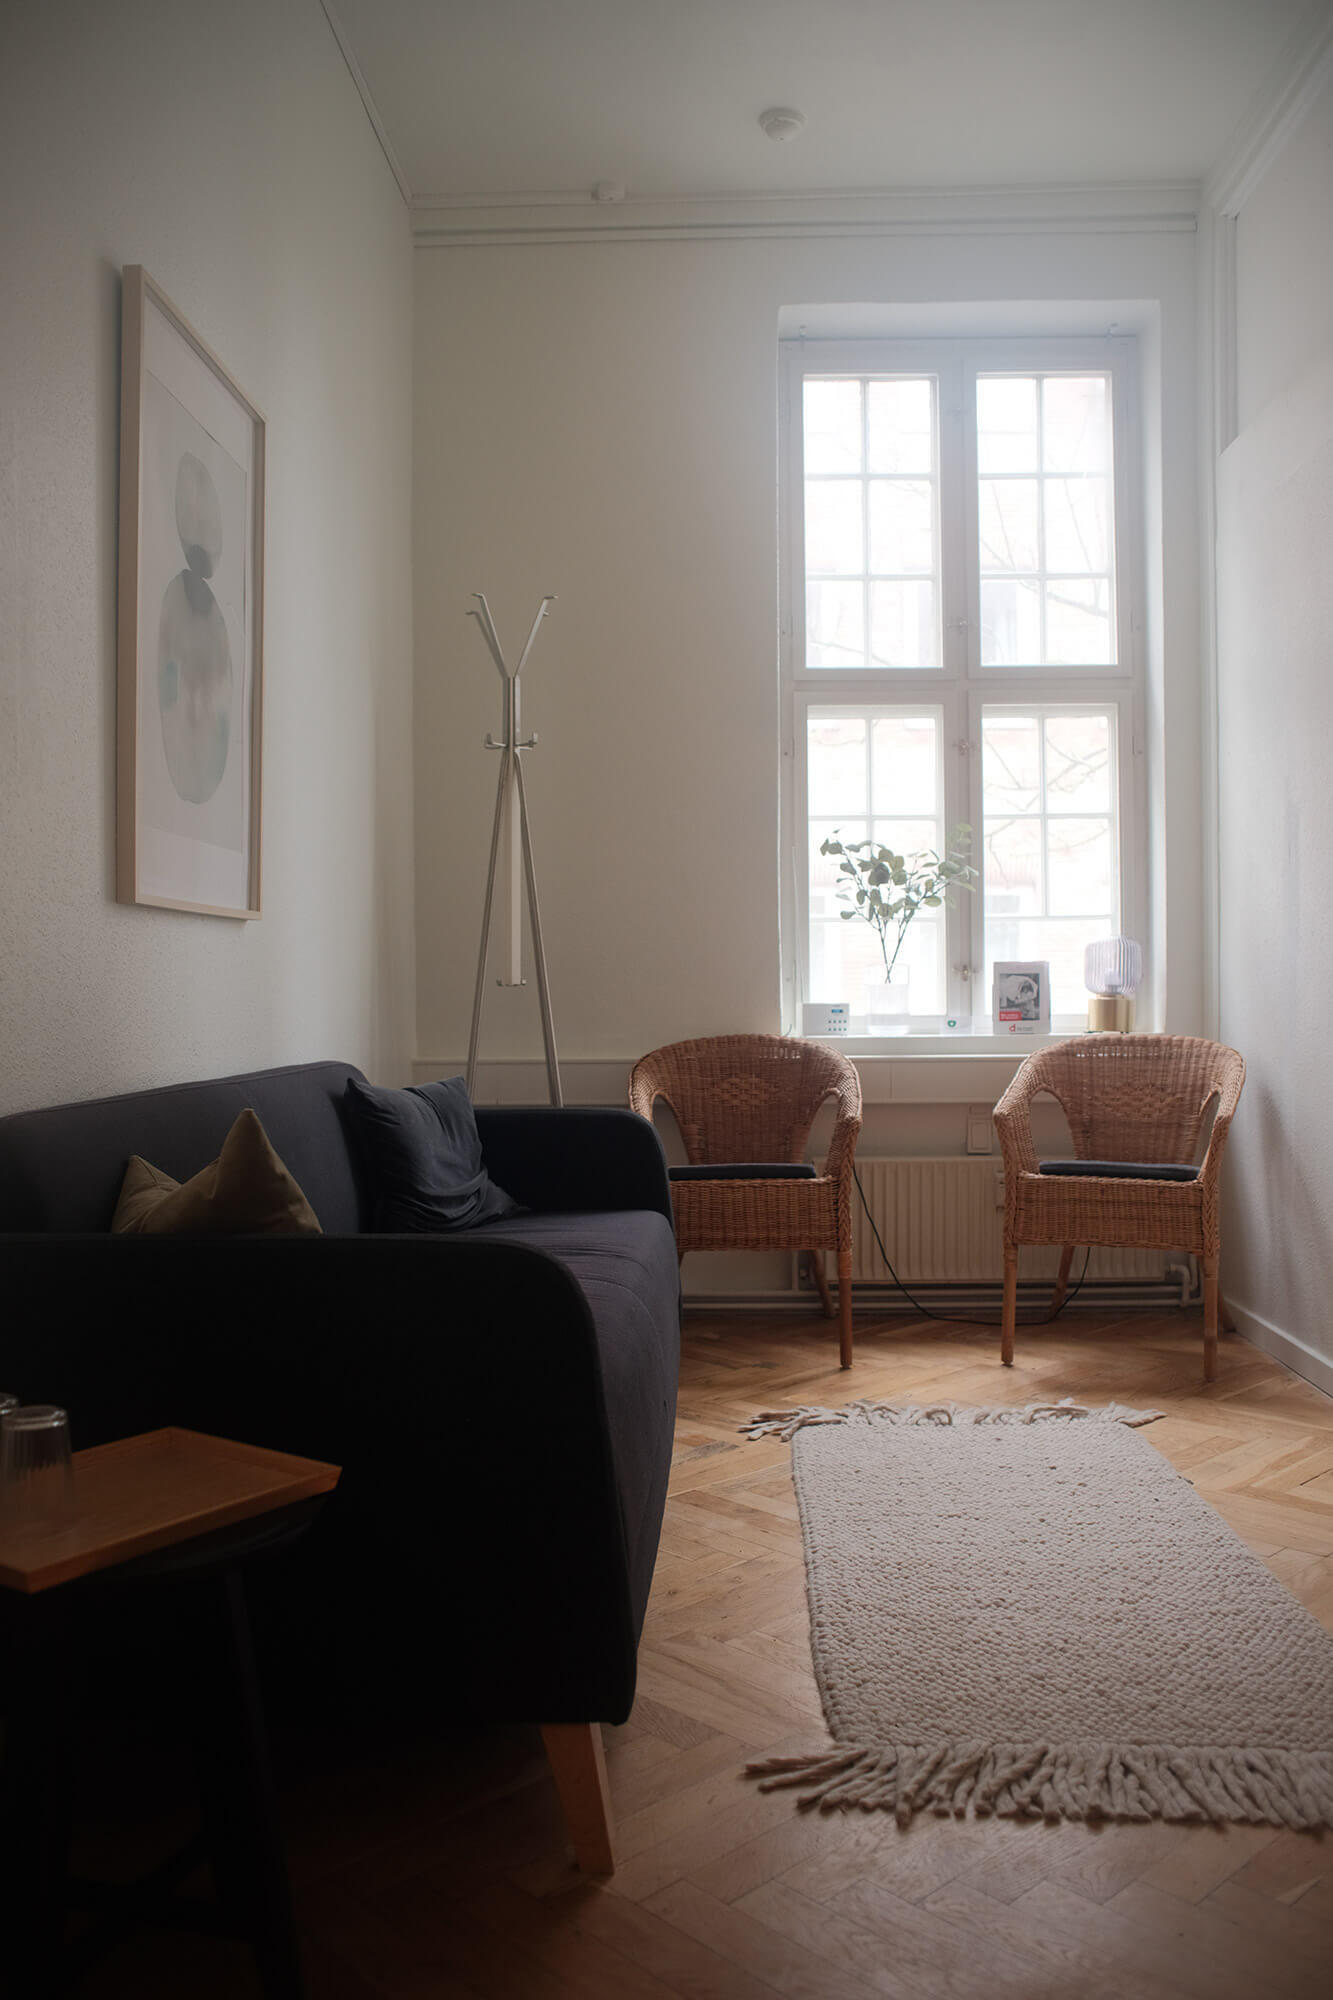 Venteværelse med behagelige sofaer og stole